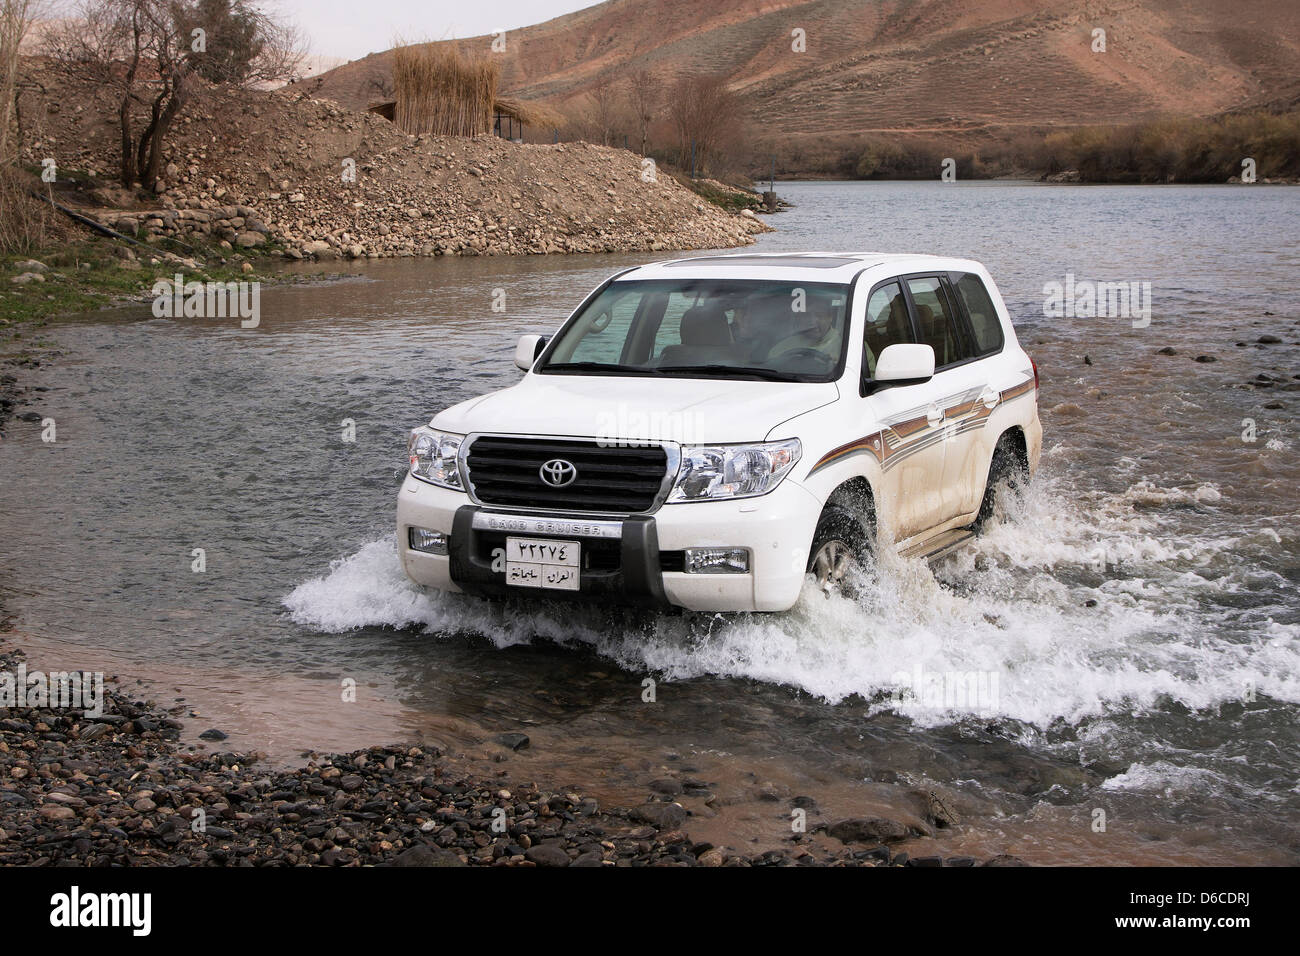 4 x 4 Toyota Landcruiser veicolo nel fiume Dokan, Kurdistan iracheno, Iraq settentrionale Foto Stock